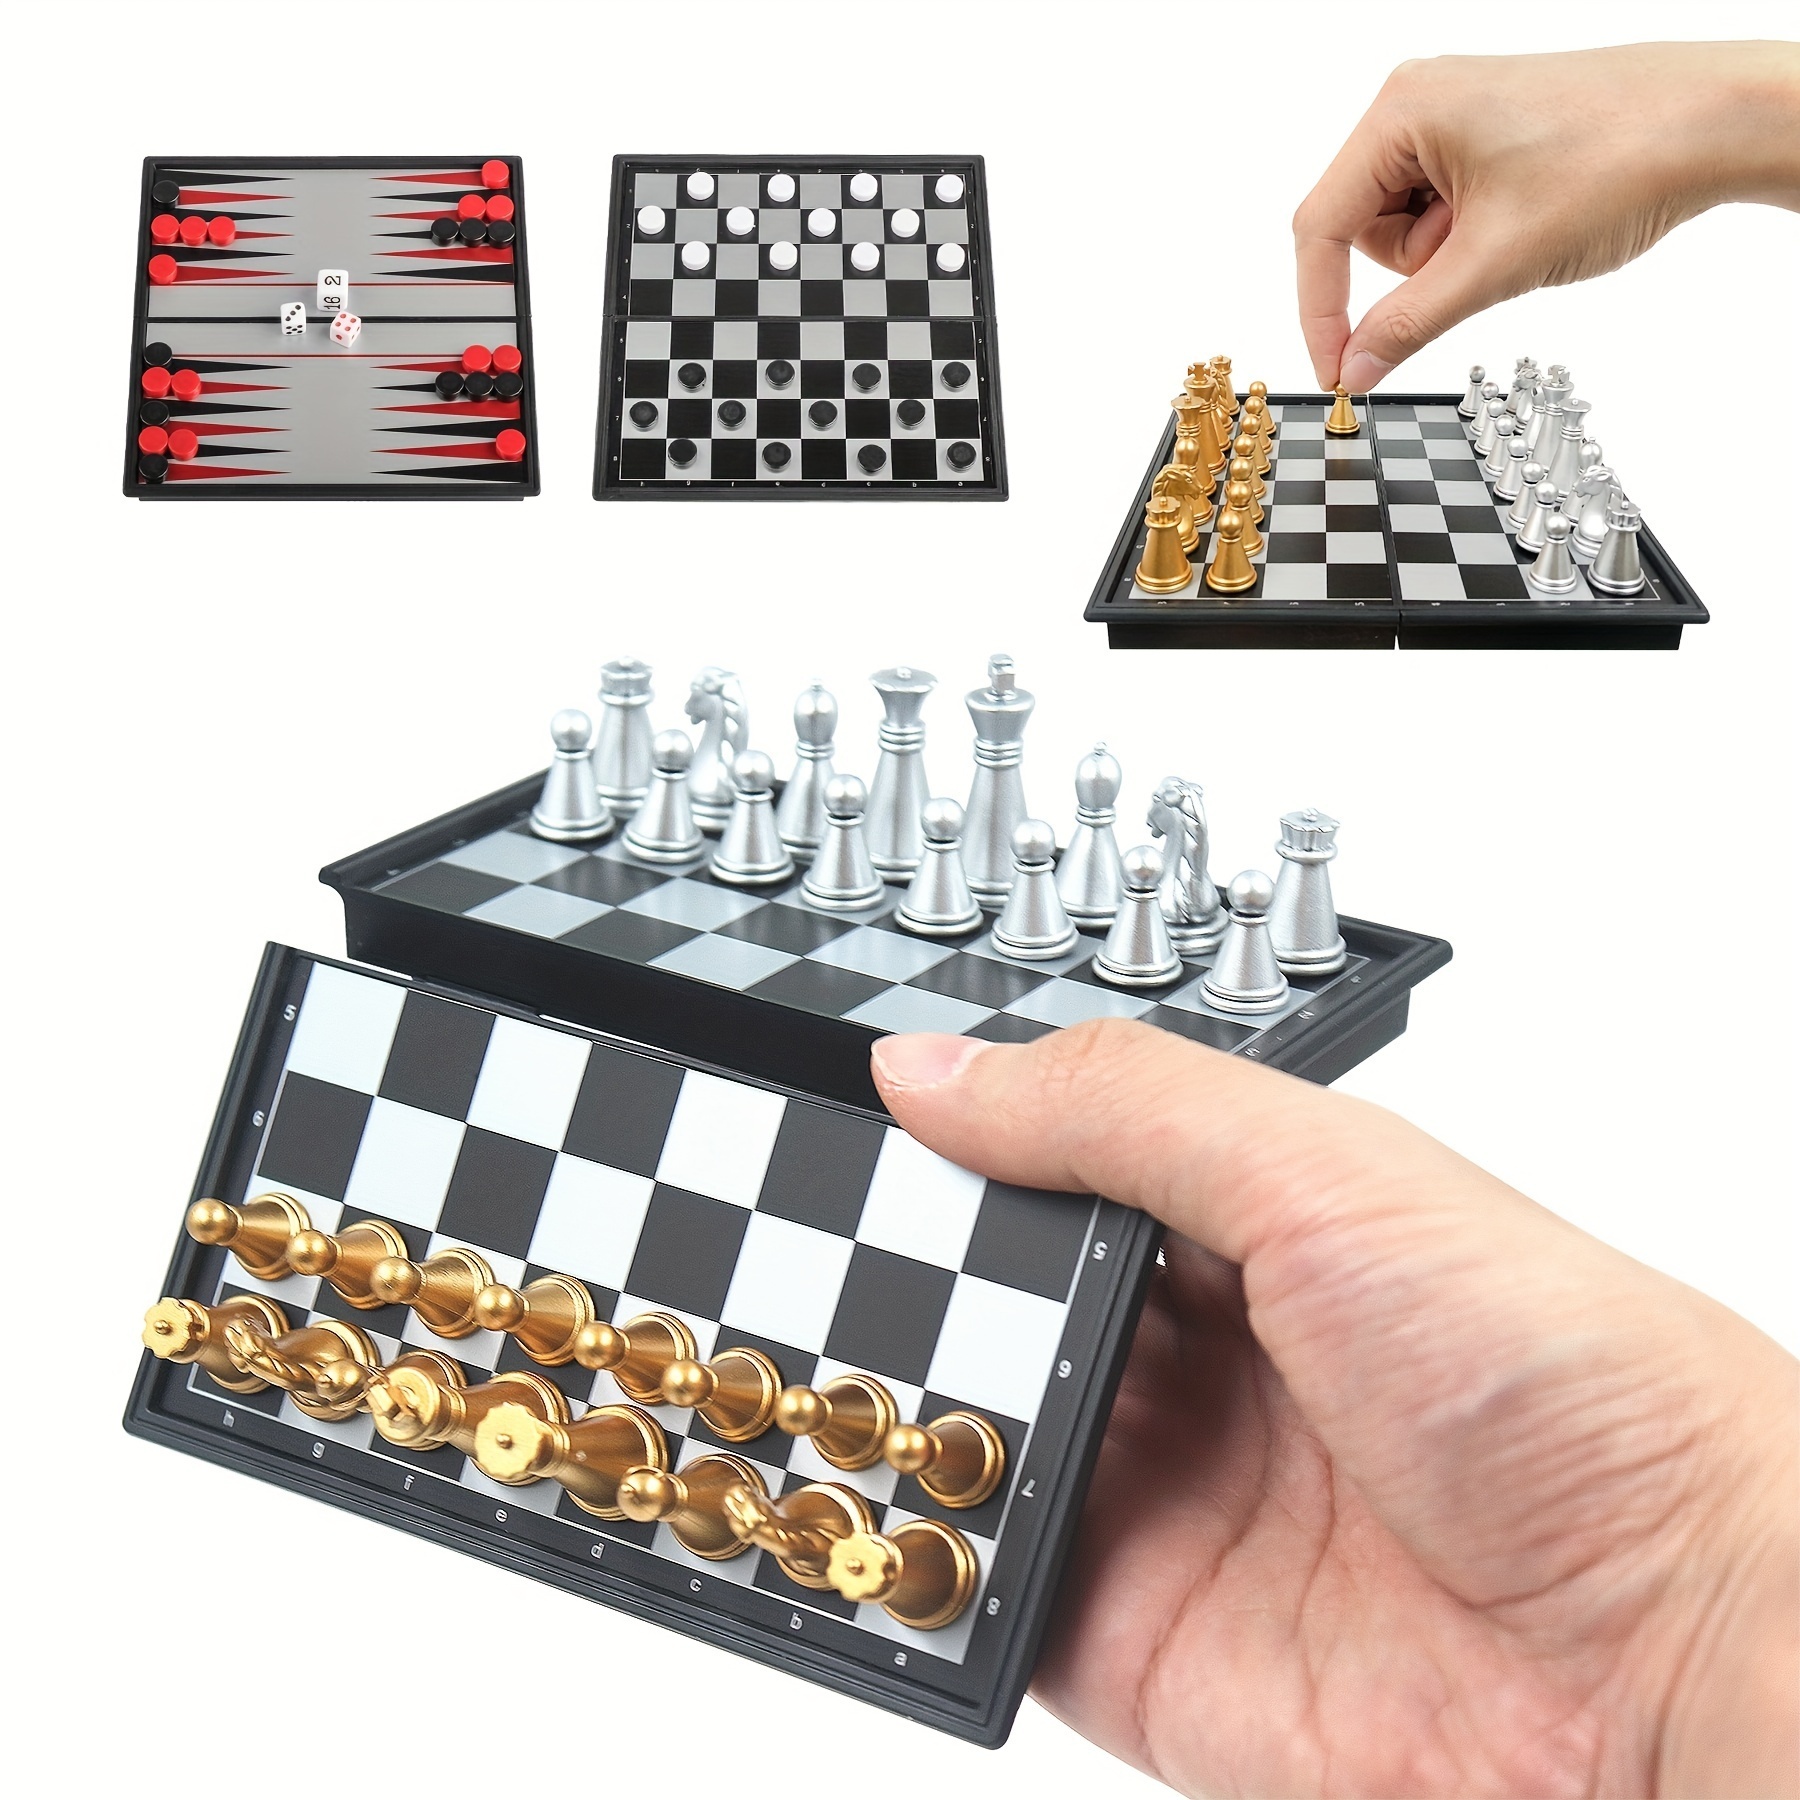 Conjunto de xadrez com efeito magnético para dois jogadores e